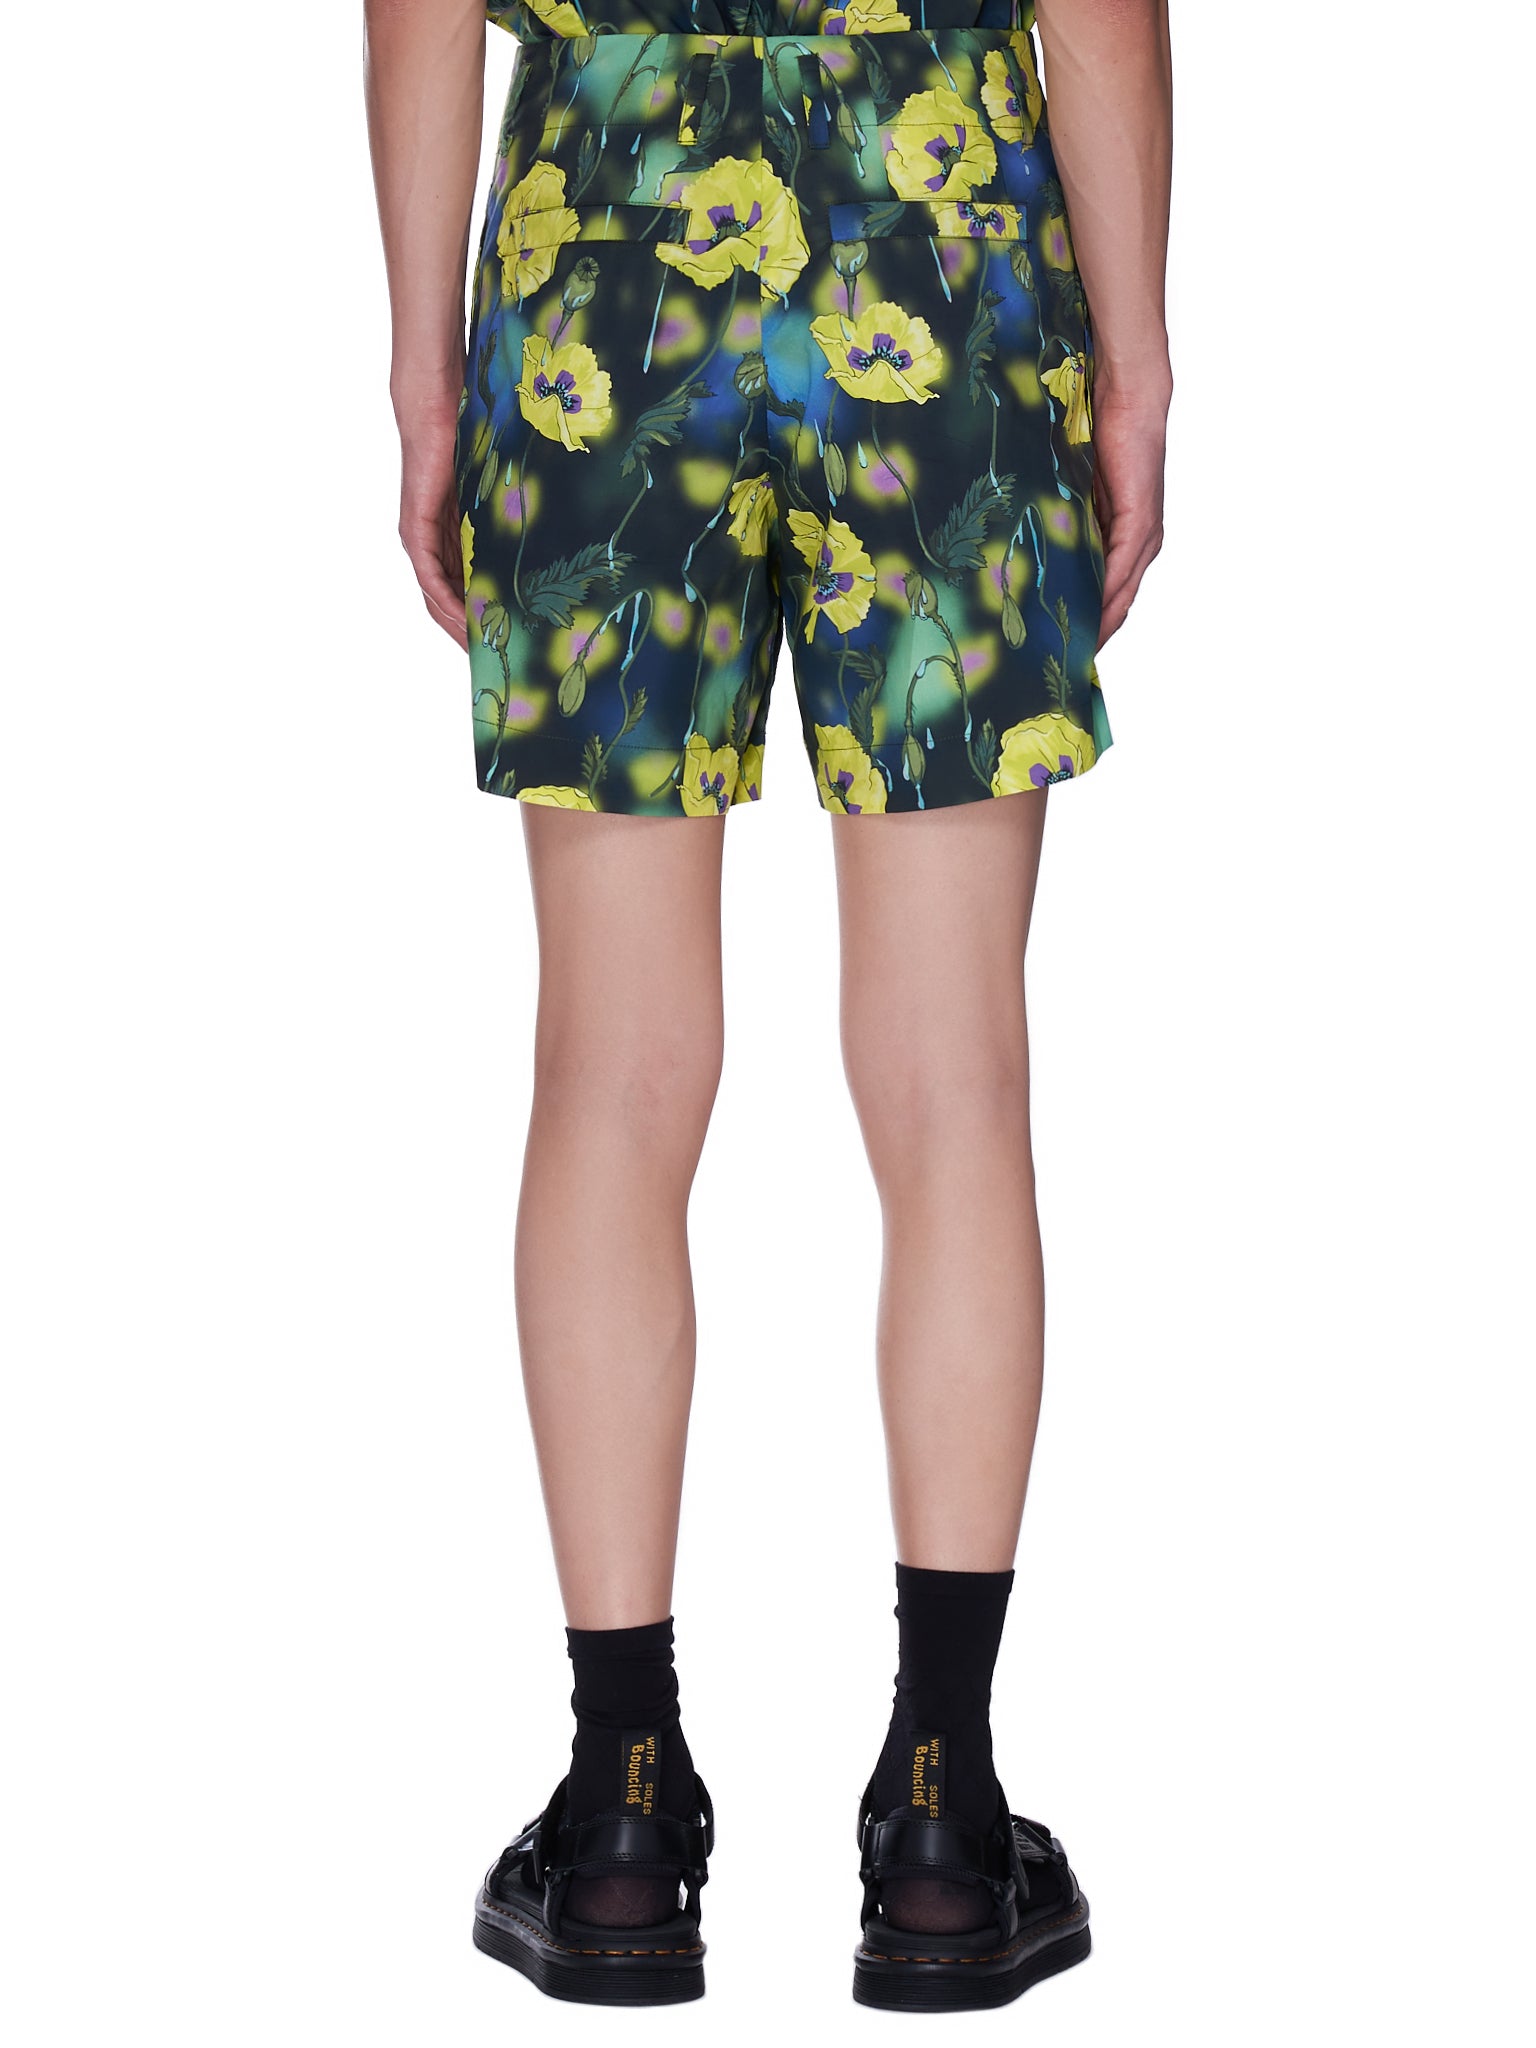 Poppy Print Pleated Shorts (PHANTOM-DARK-POPPIES)